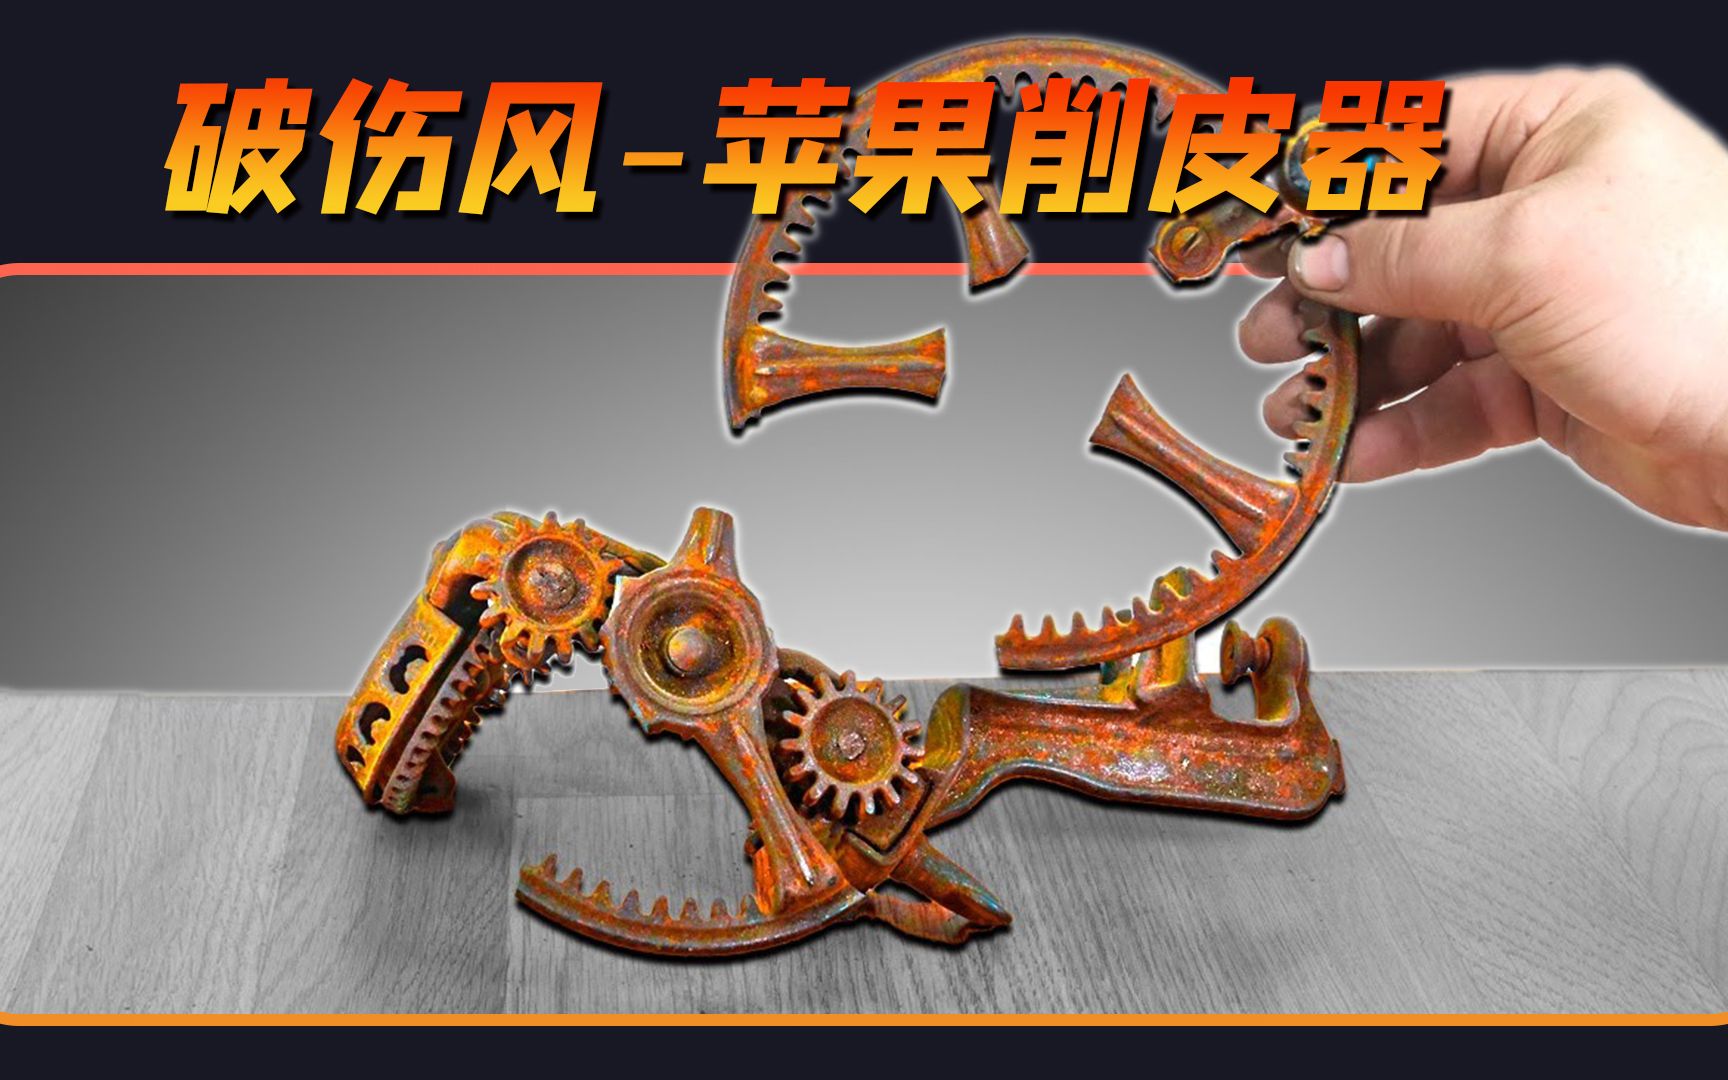 北京汽车发布会开场节目破铜烂铁表演 - 哔哩哔哩